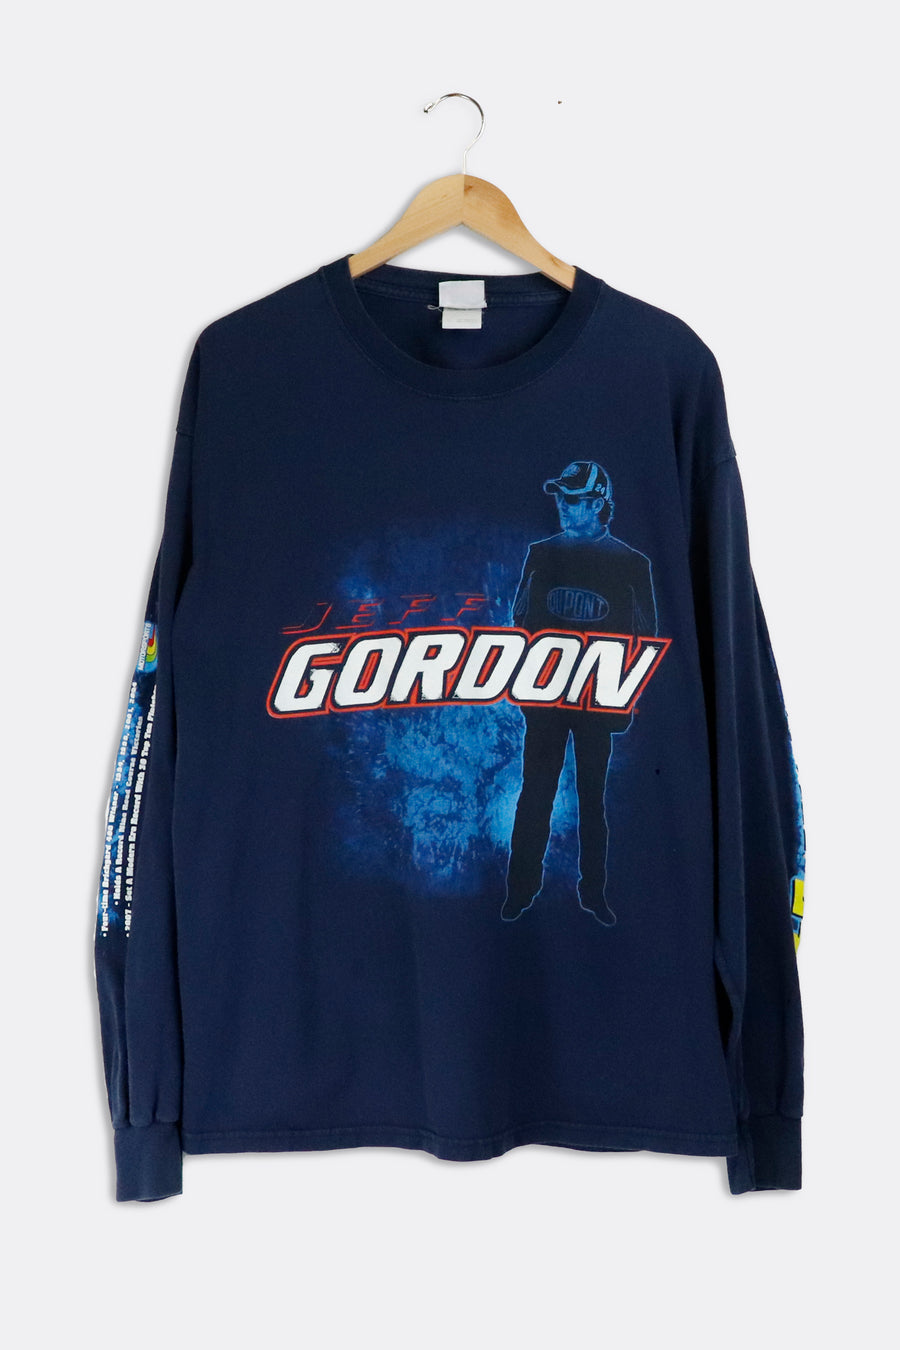 Vintage Nascar Jeff Gordon Long Sleeve Shirt Sz XL